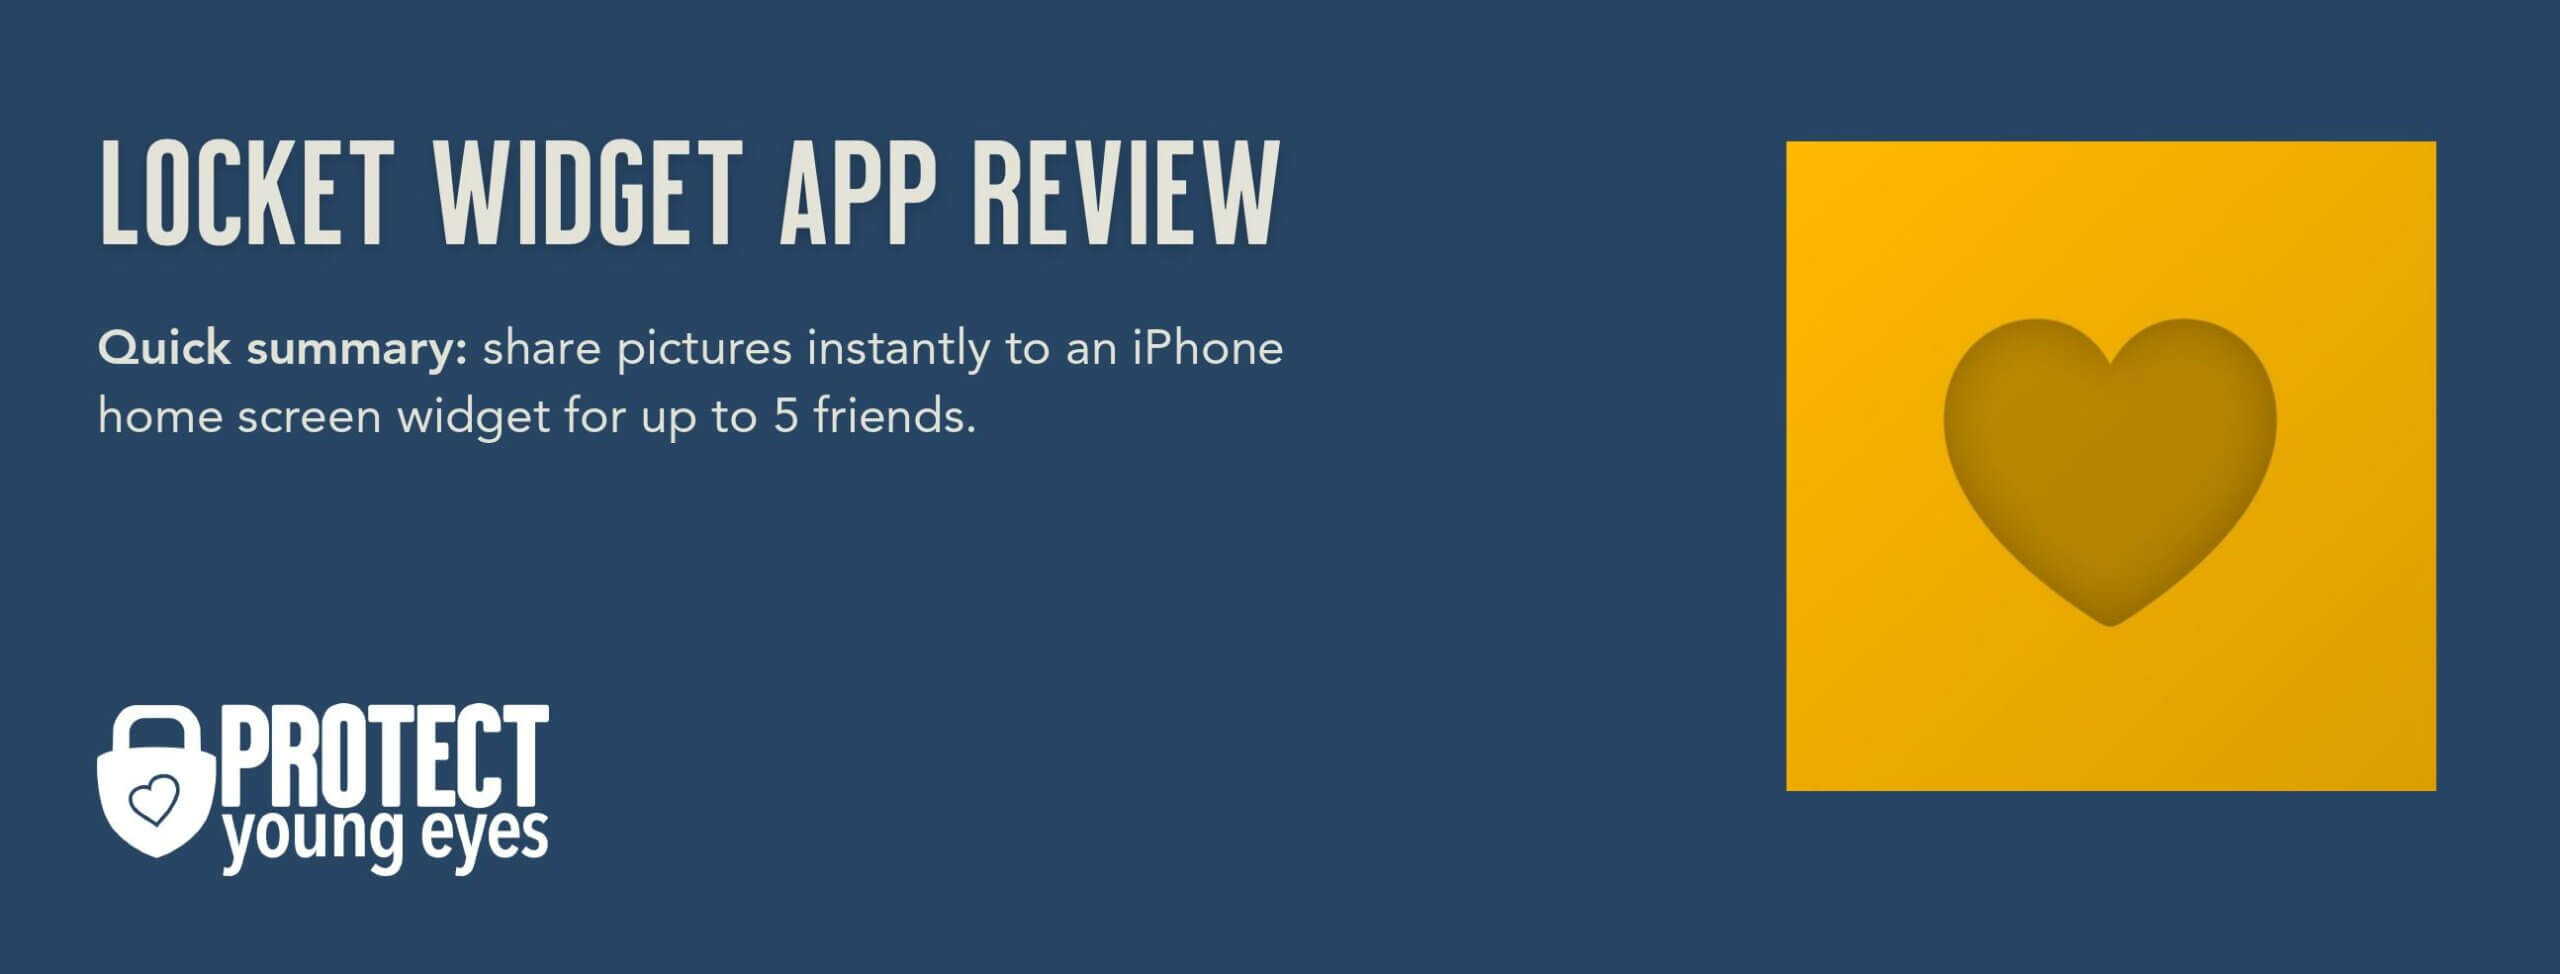 Locket Widget App Review Header